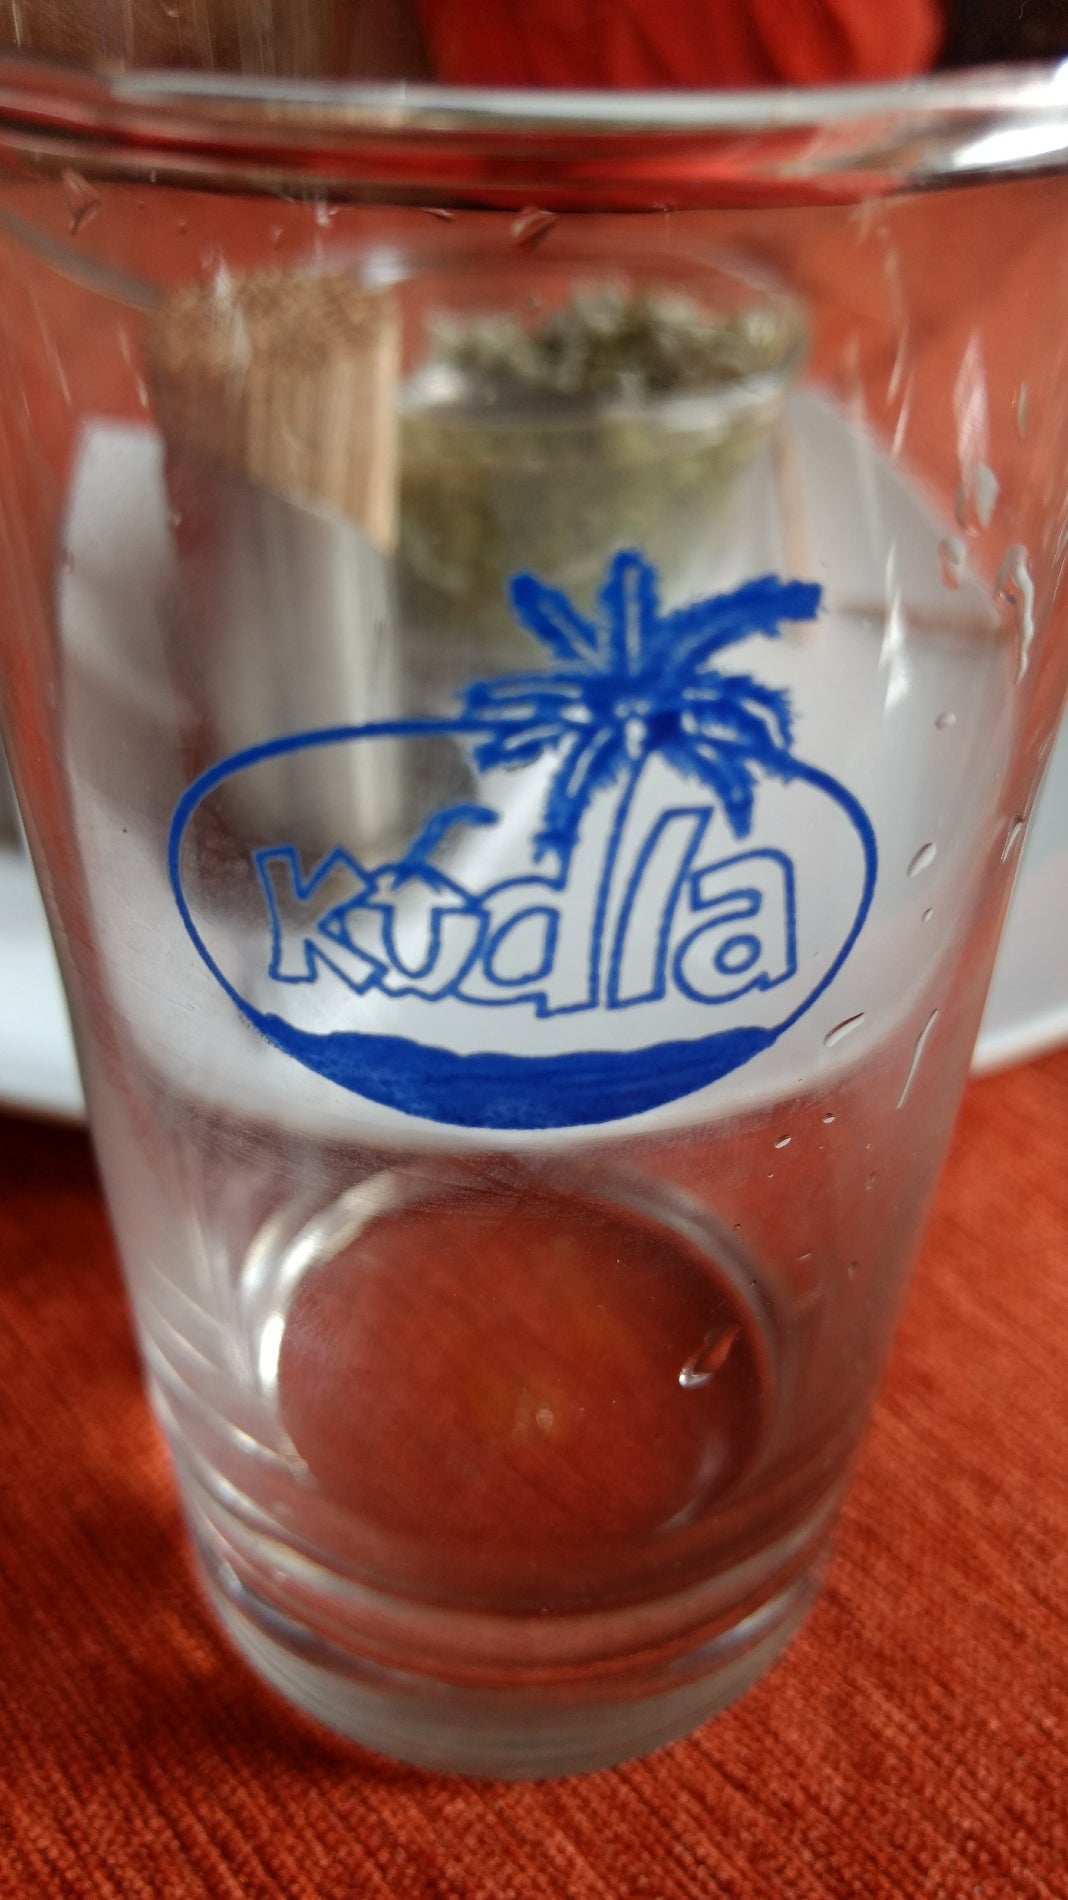 New Kudla The Family Restaurant